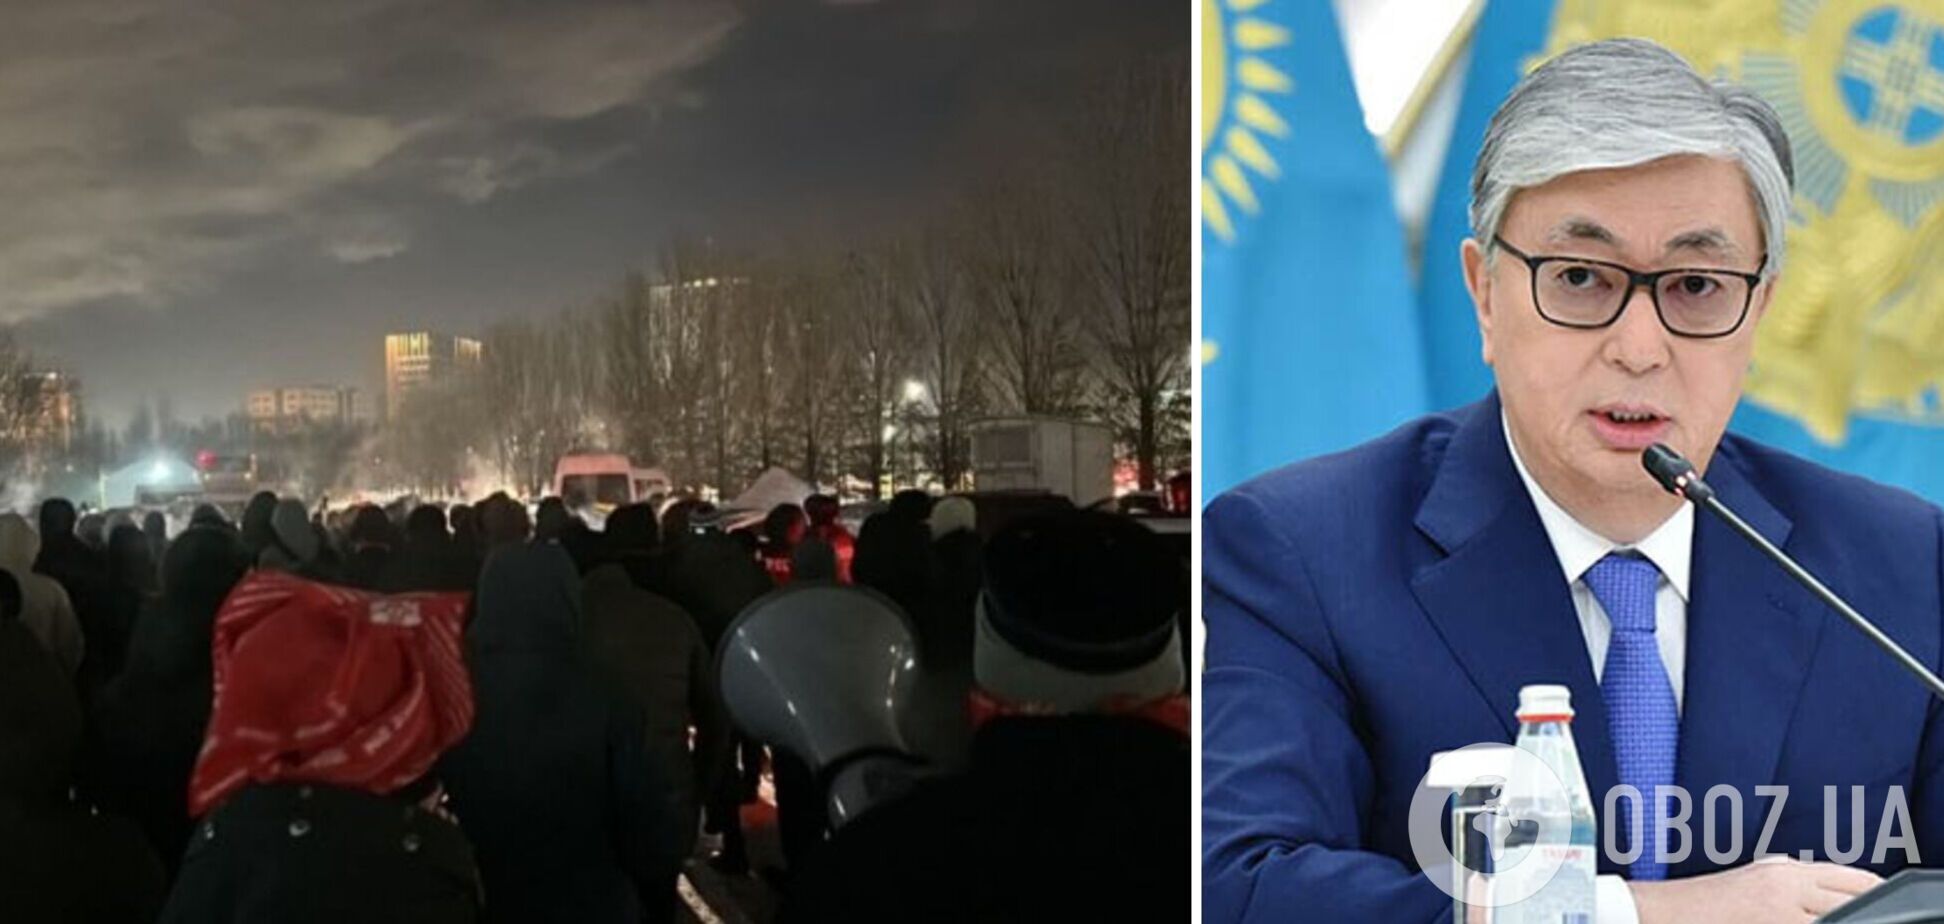 Поліція в Астані розігнала акцію протесту після інавгурації Токаєва: людей затримували, в місті відключили інтернет. Відео